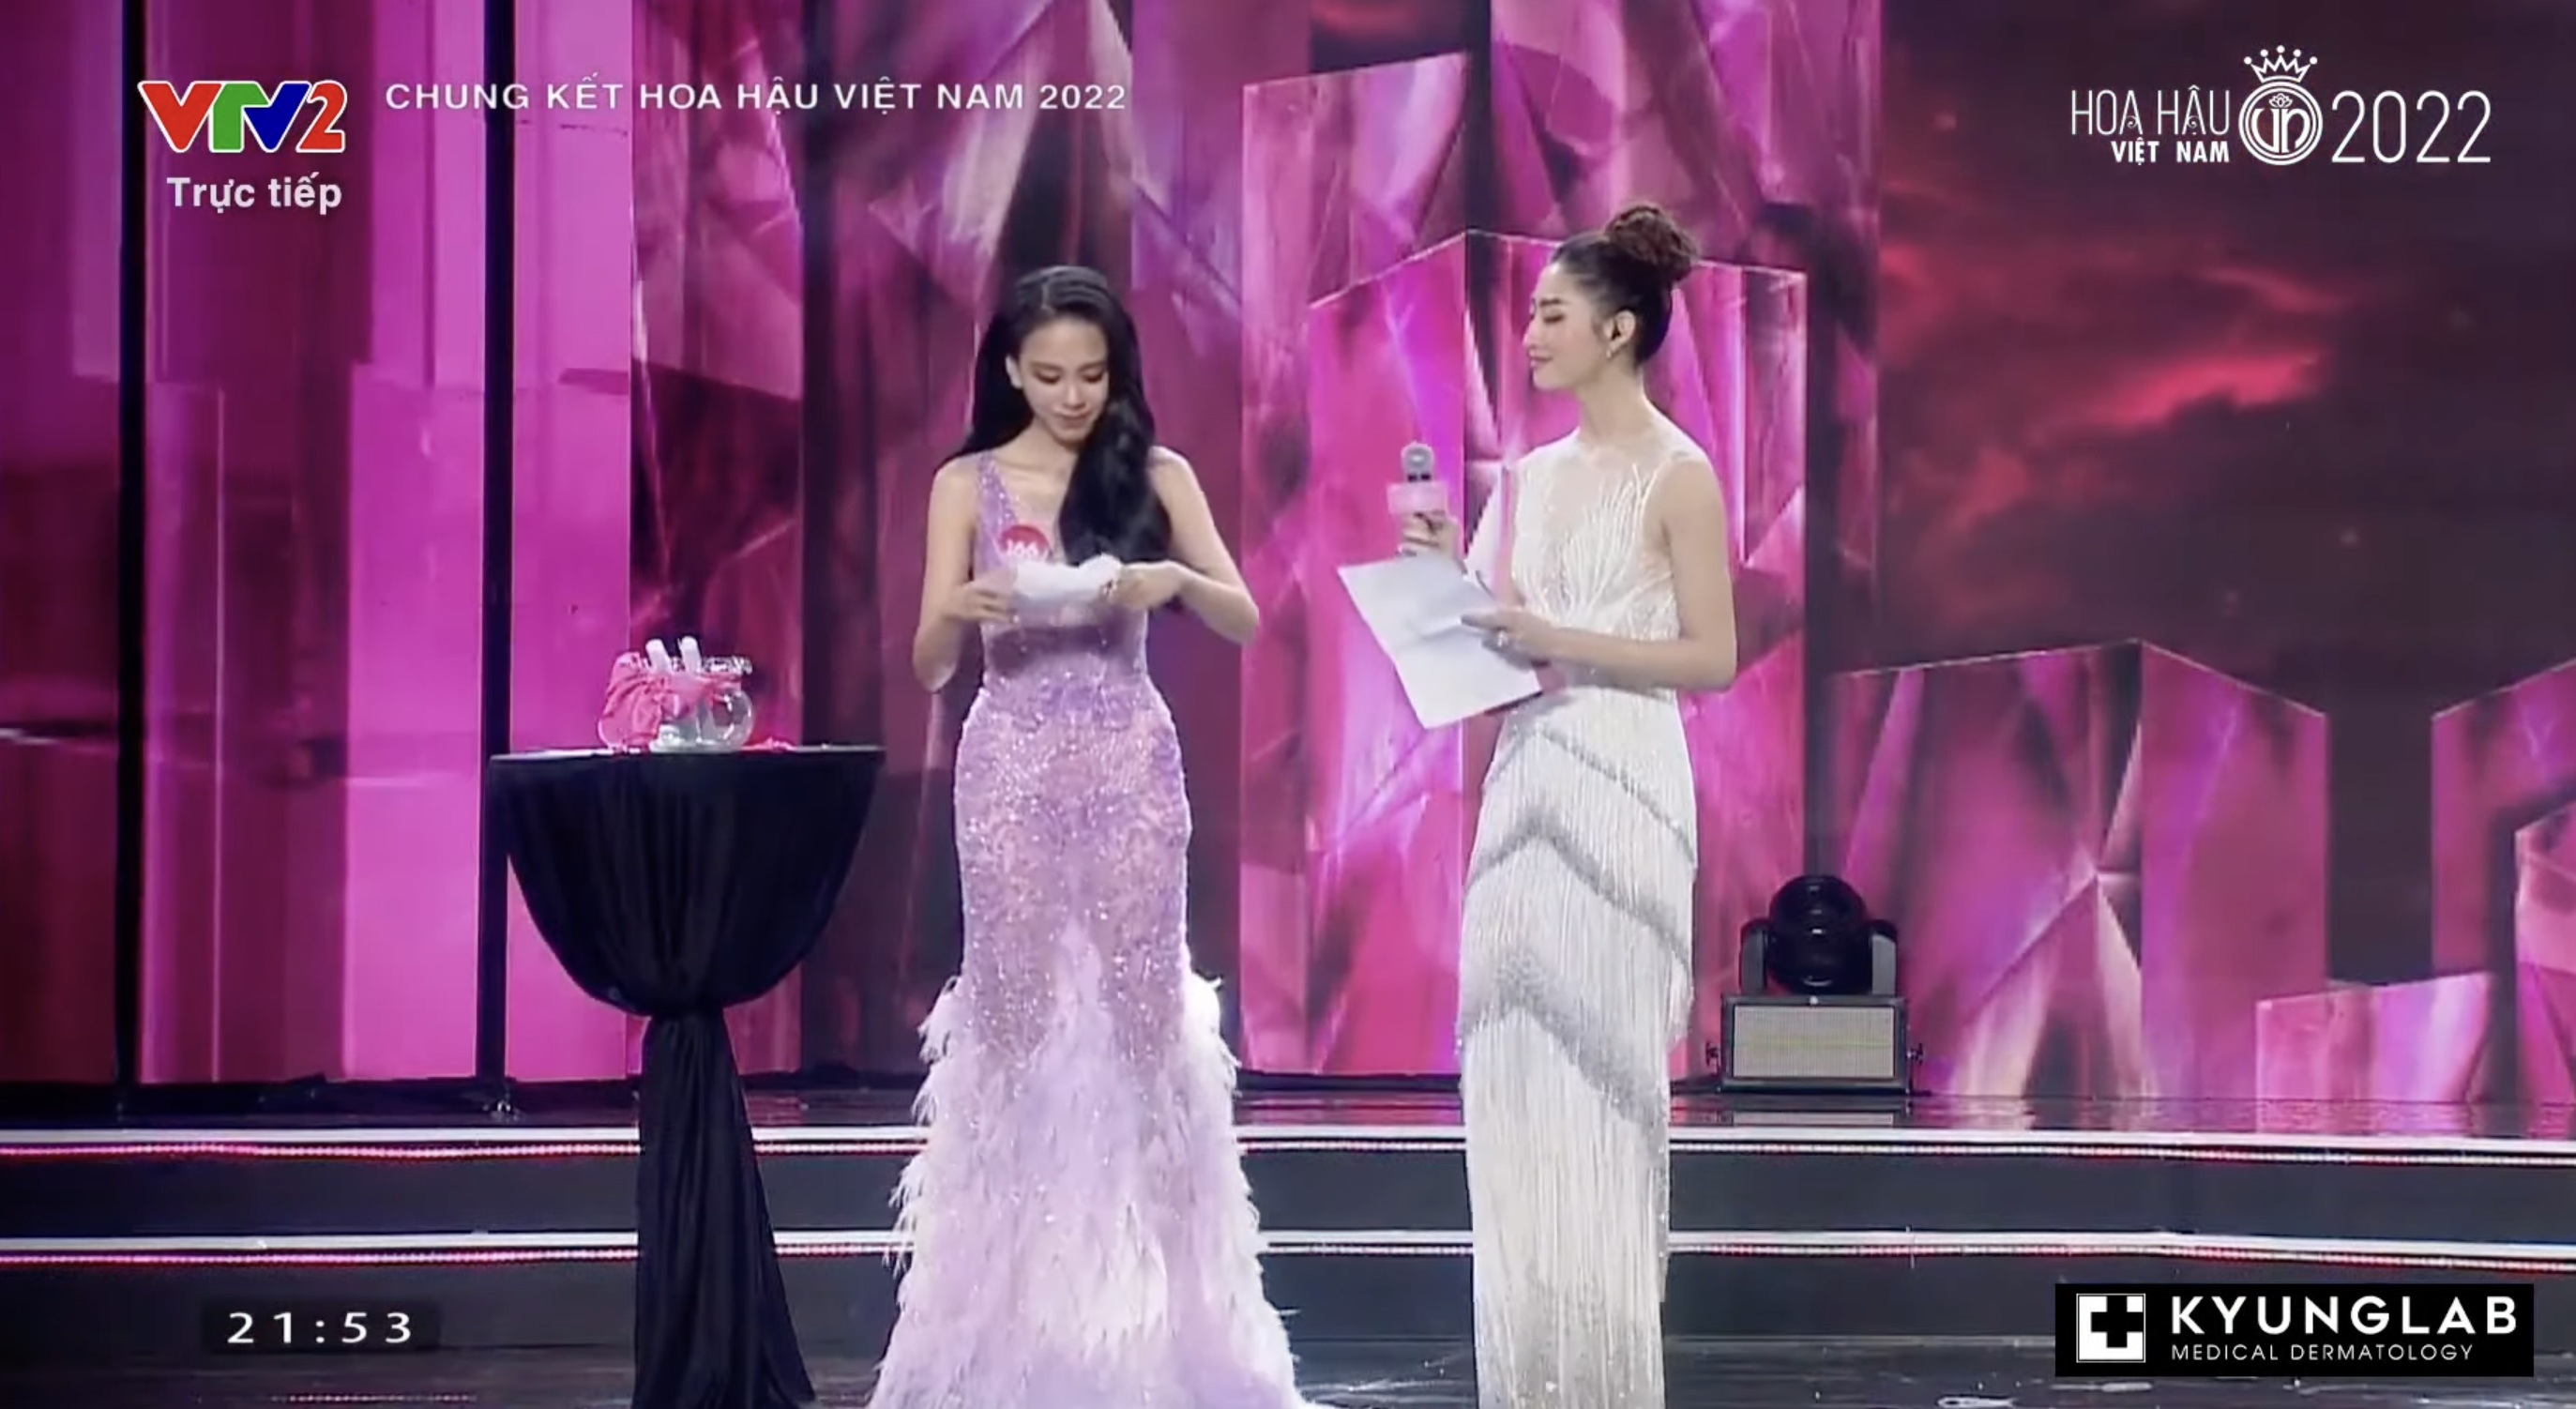 Chung kết Hoa hậu Việt Nam 2022: Tân Hoa hậu chính thức gọi tên Huỳnh Thị Thanh Thuỷ - 19